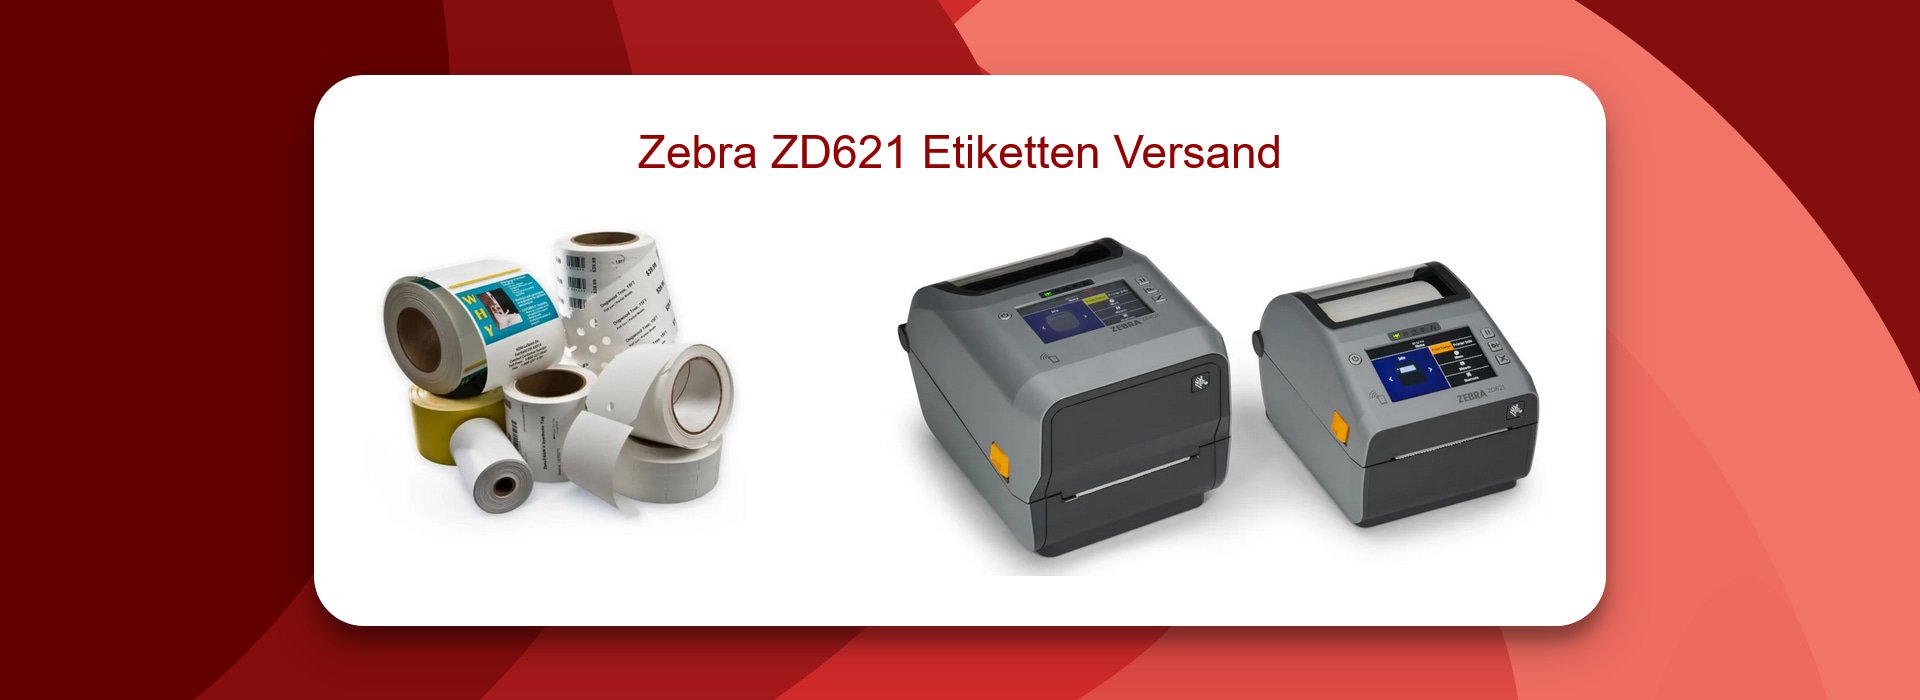 Zebra ZD621 Etiketten für Versandoptimierung